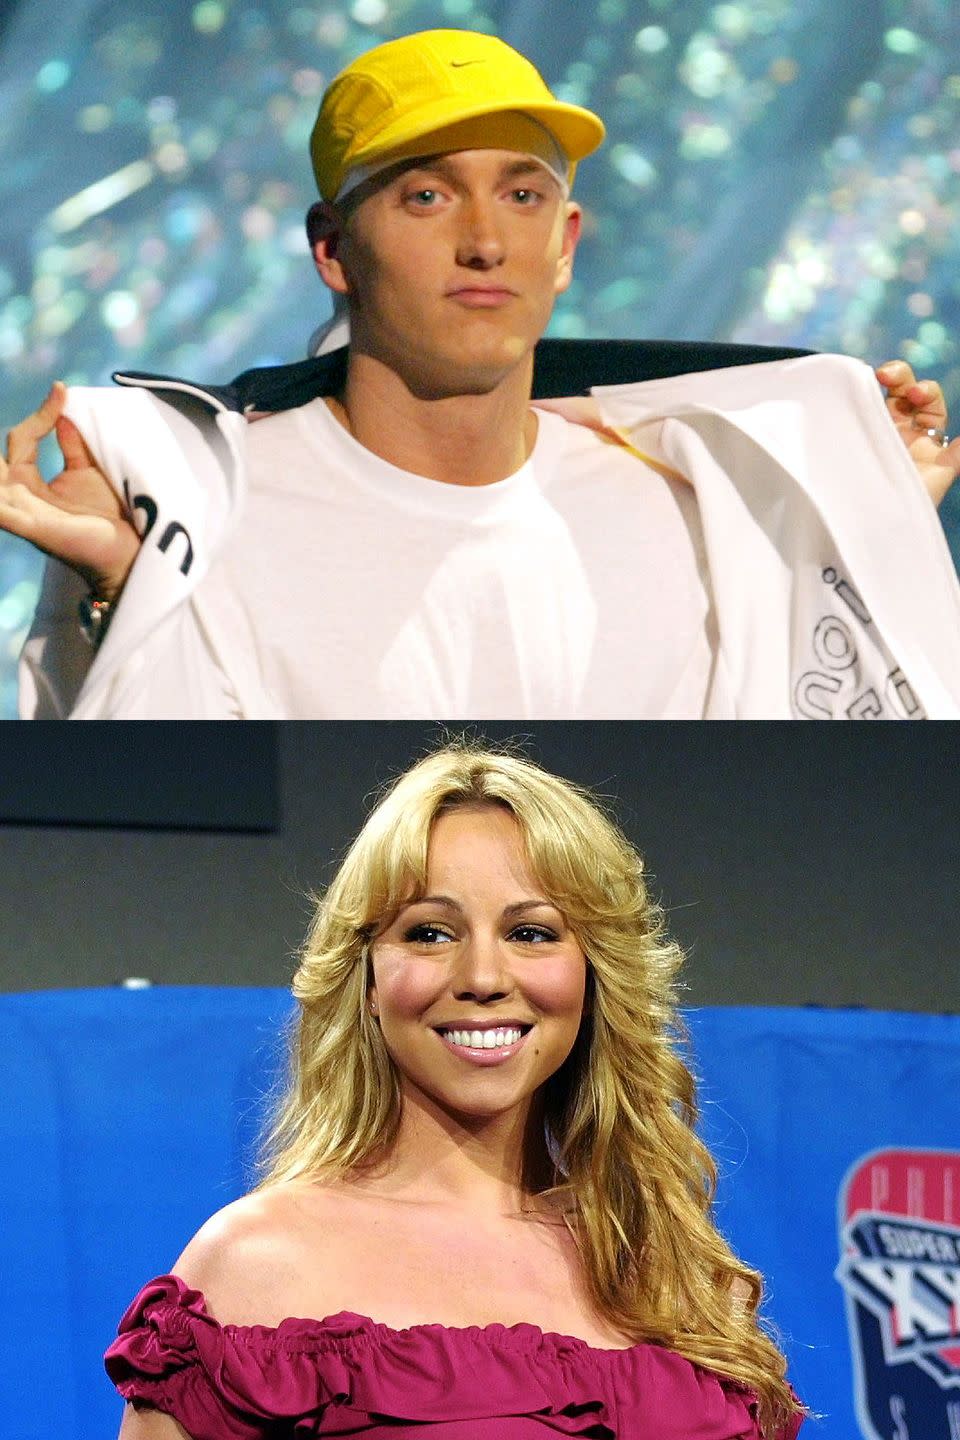 2002: Eminem vs. Mariah Carey